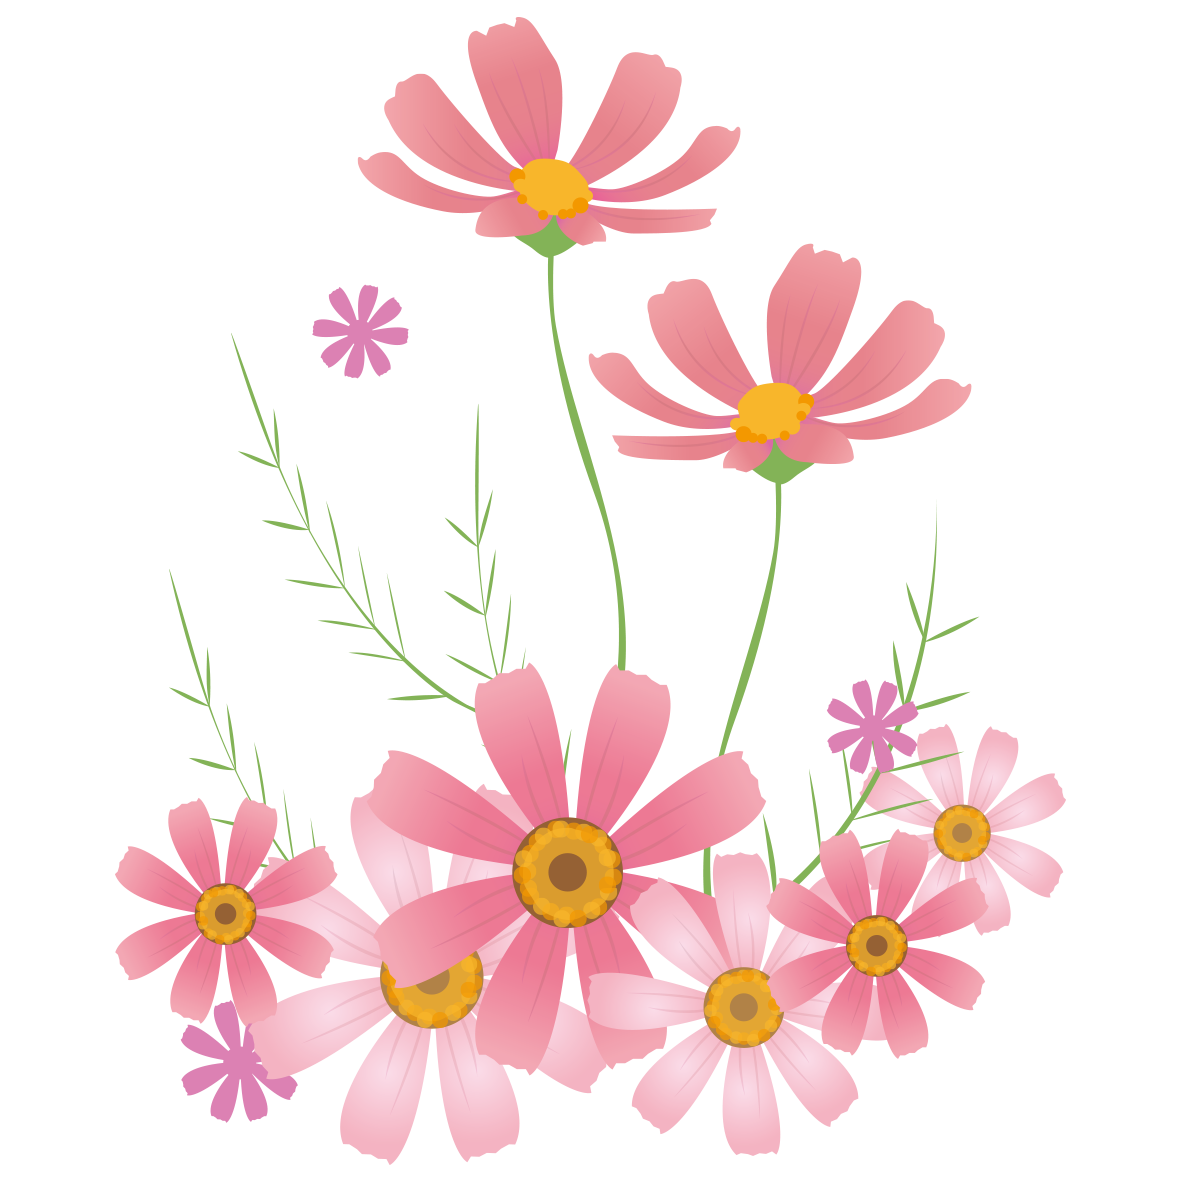 ベスト50 かわいい イラスト コスモス 美しい花の画像